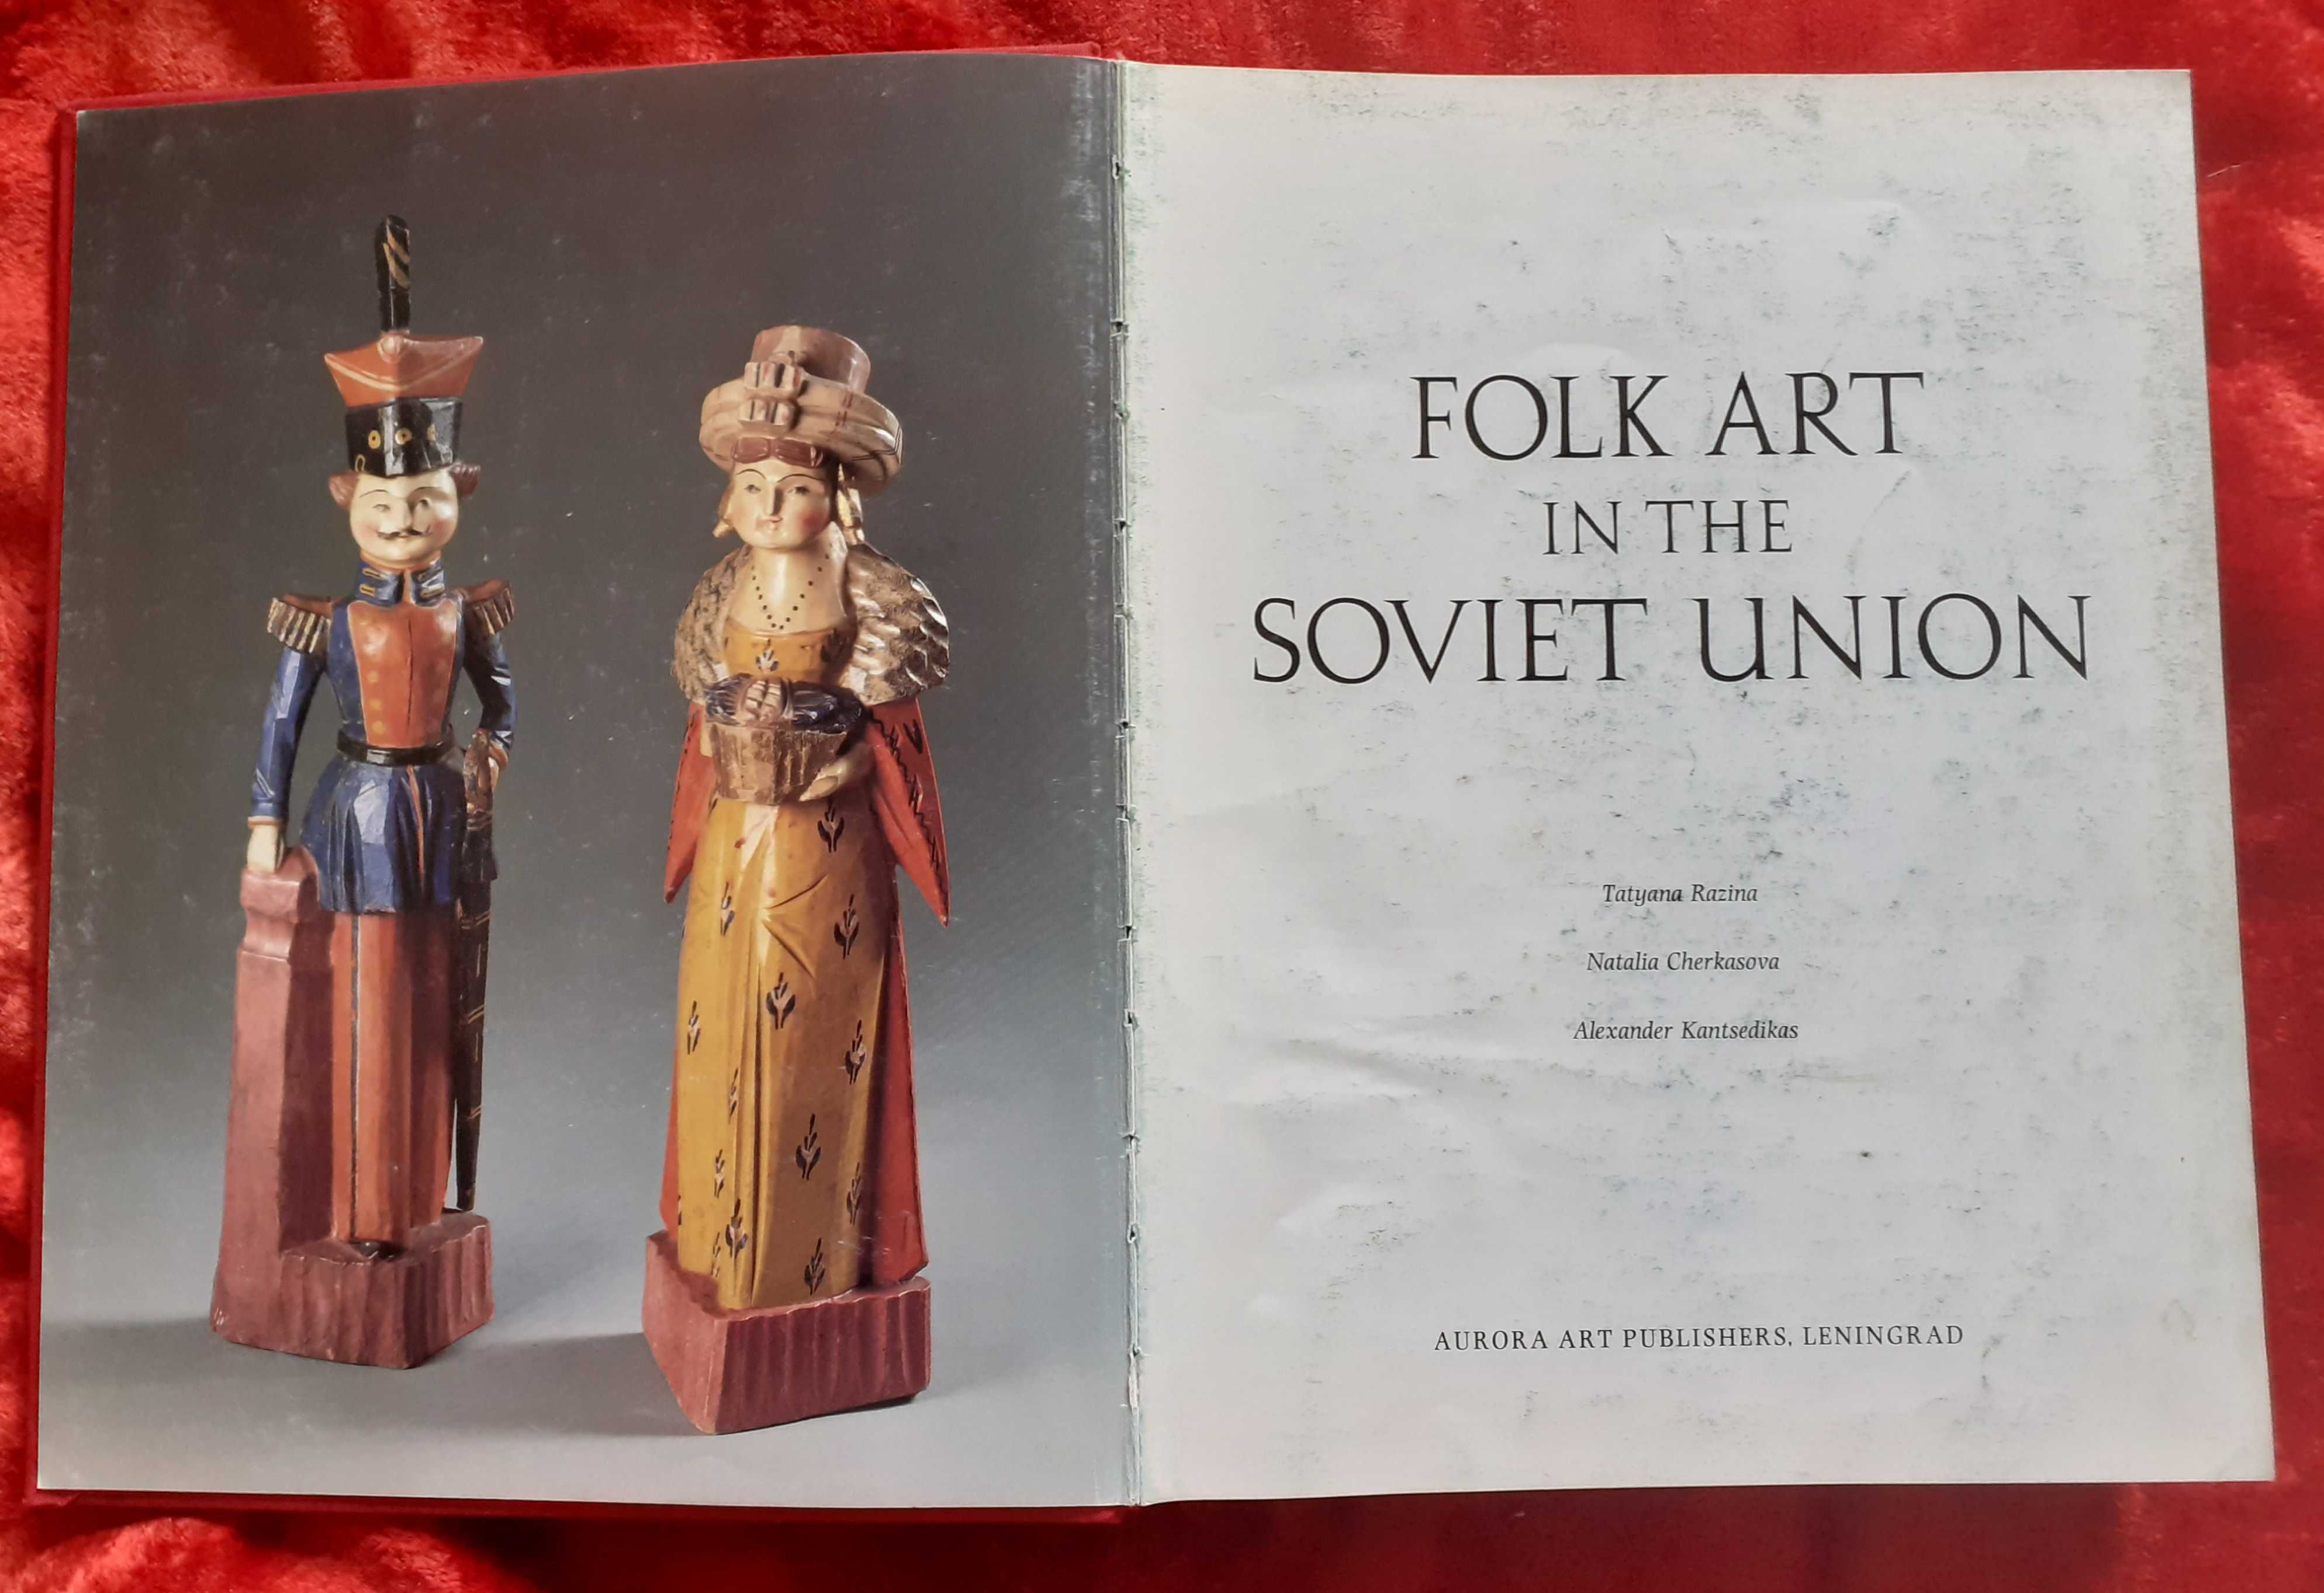 Folk Art in the Soviet Union. 
(Народное искусство в Советском Союзе)